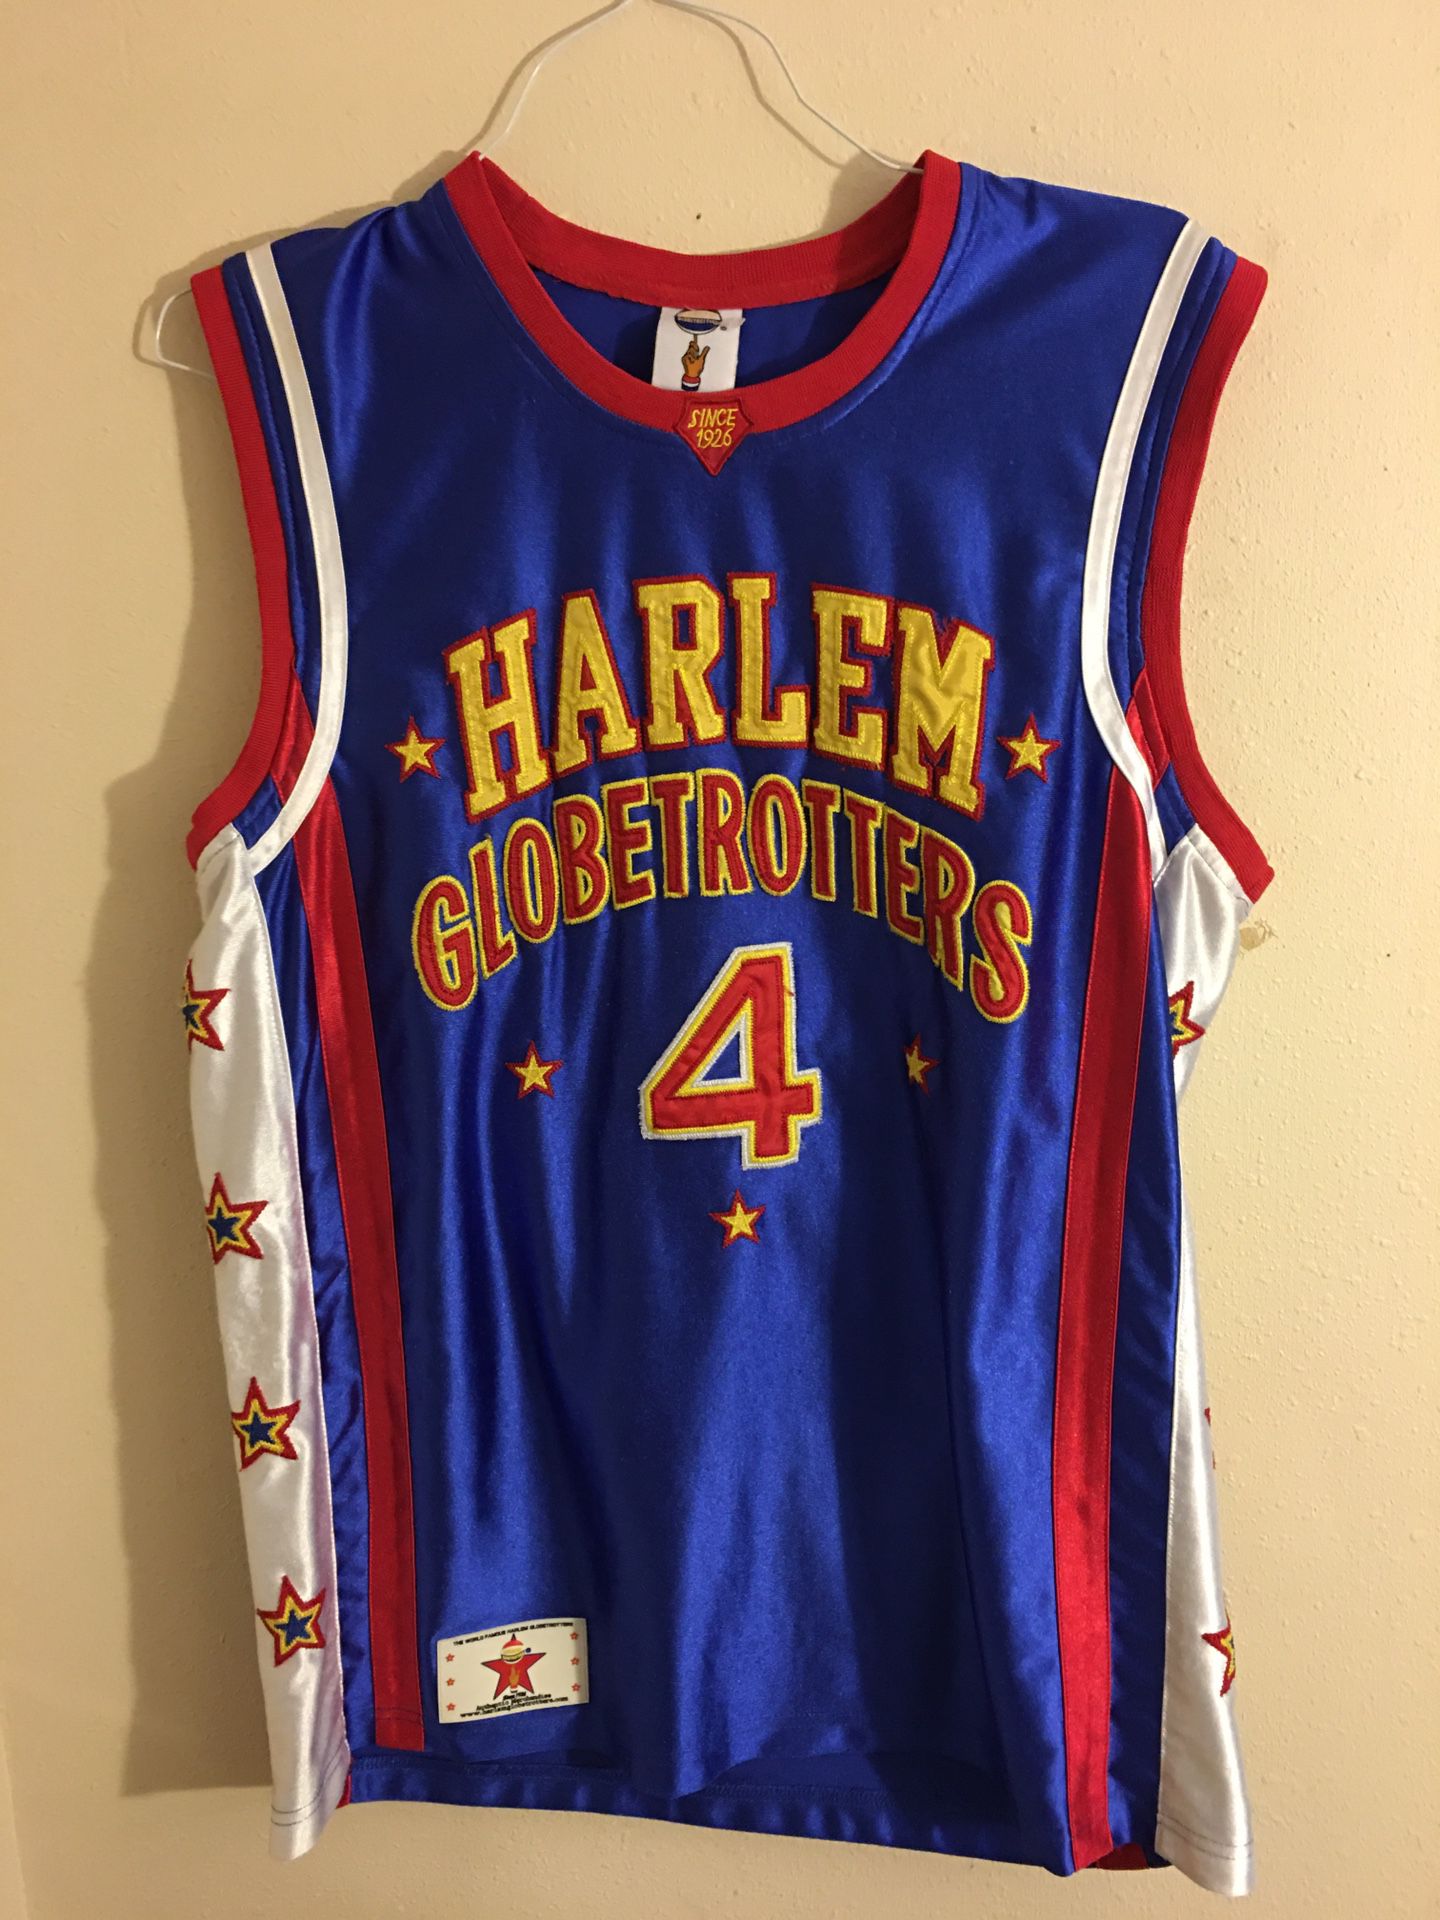 Vintage Harlem Globetrotters jersey